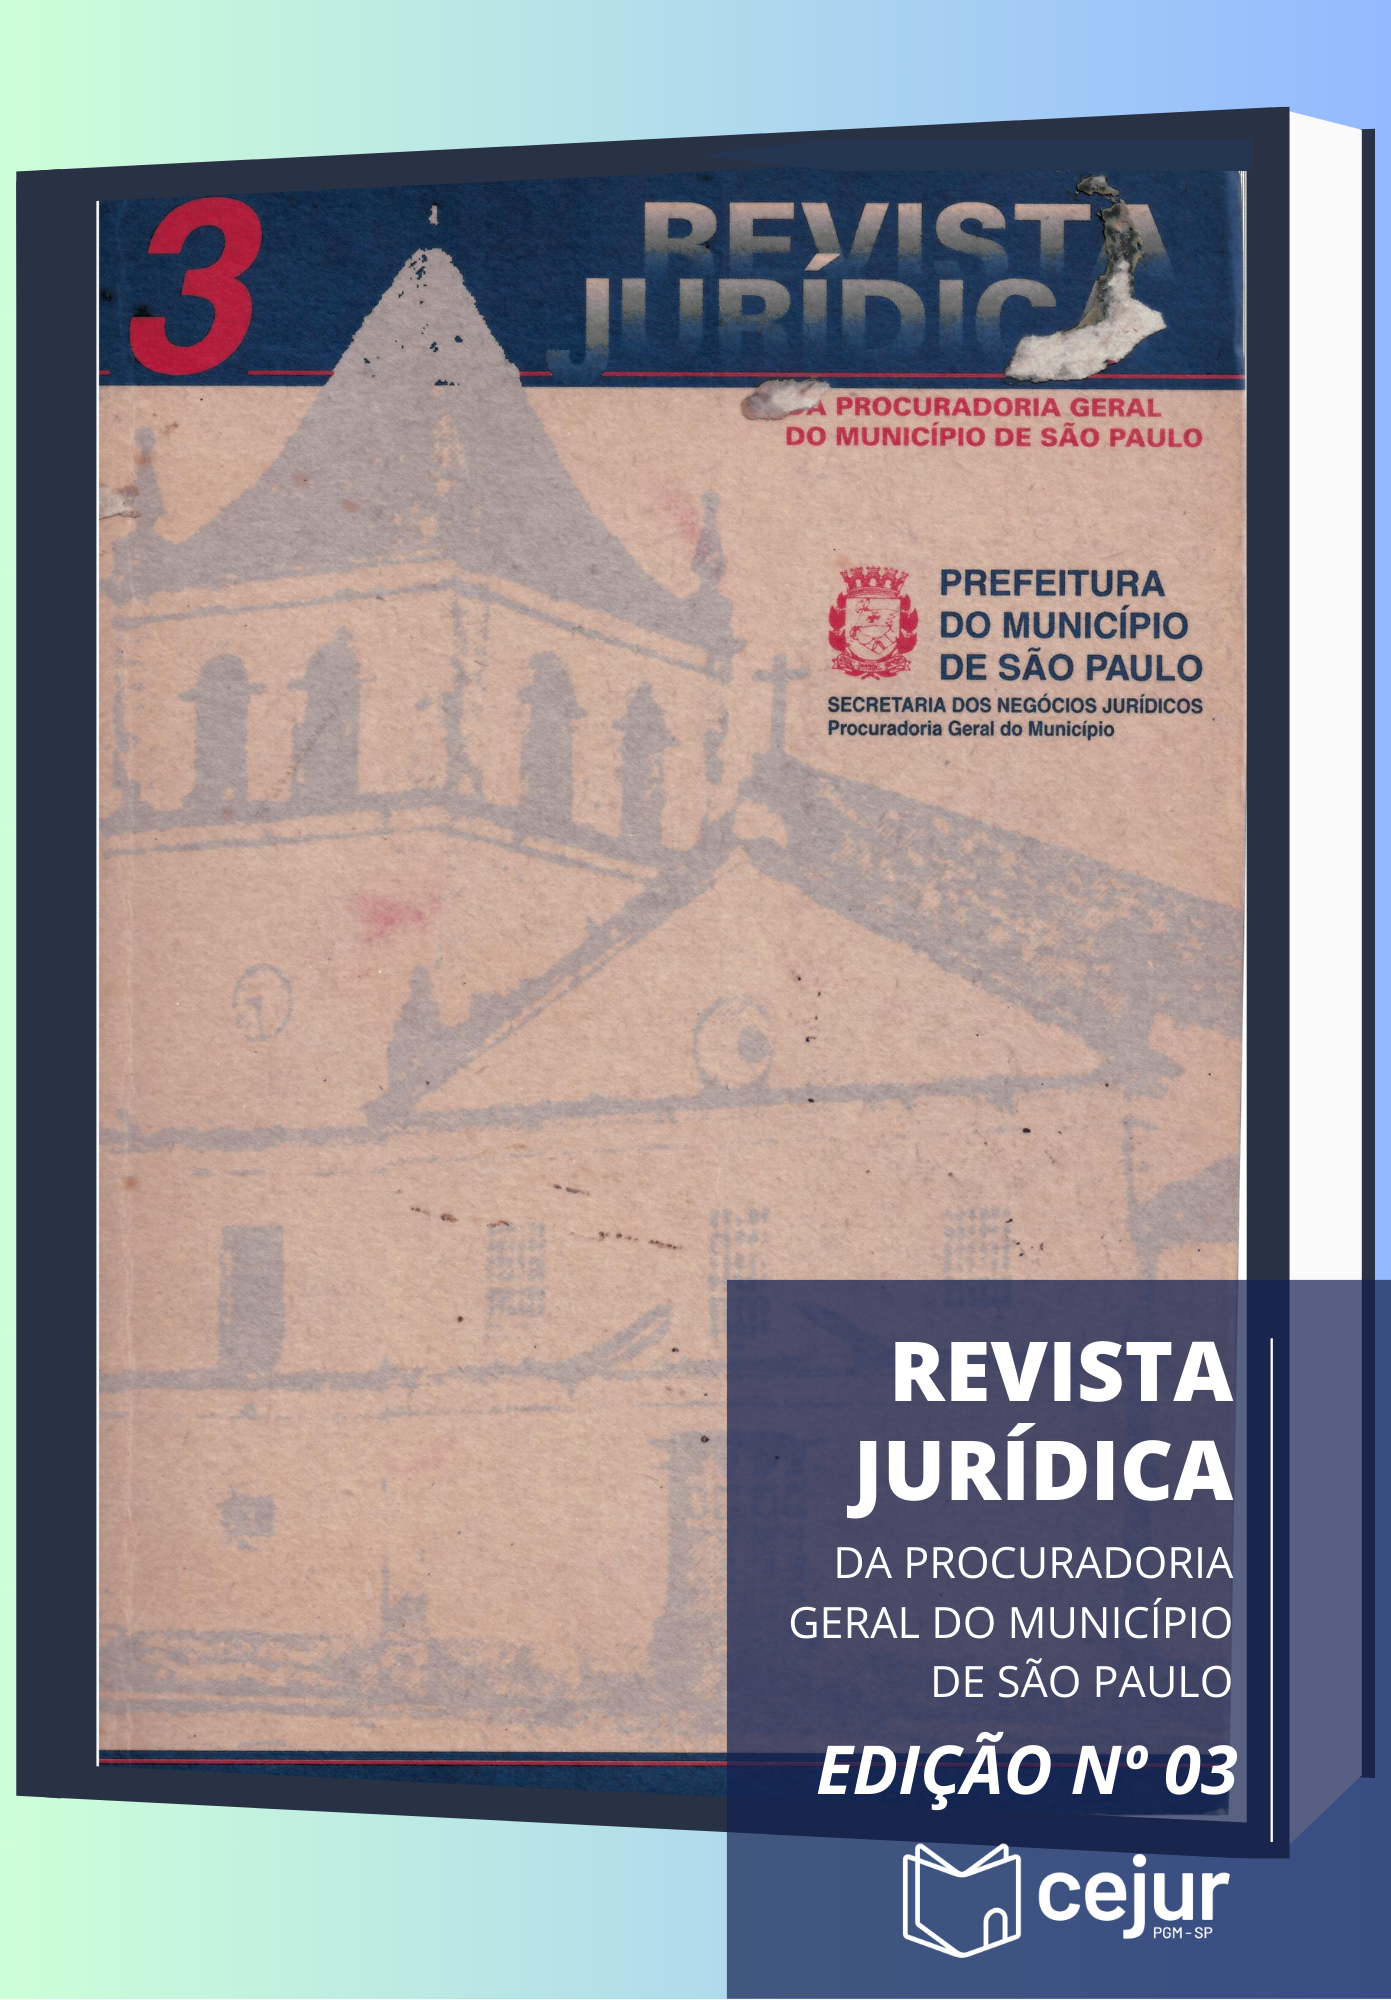 					View No. 3 (1996): Revista Jurídica da Procuradoria Geral do Município de São Paulo
				